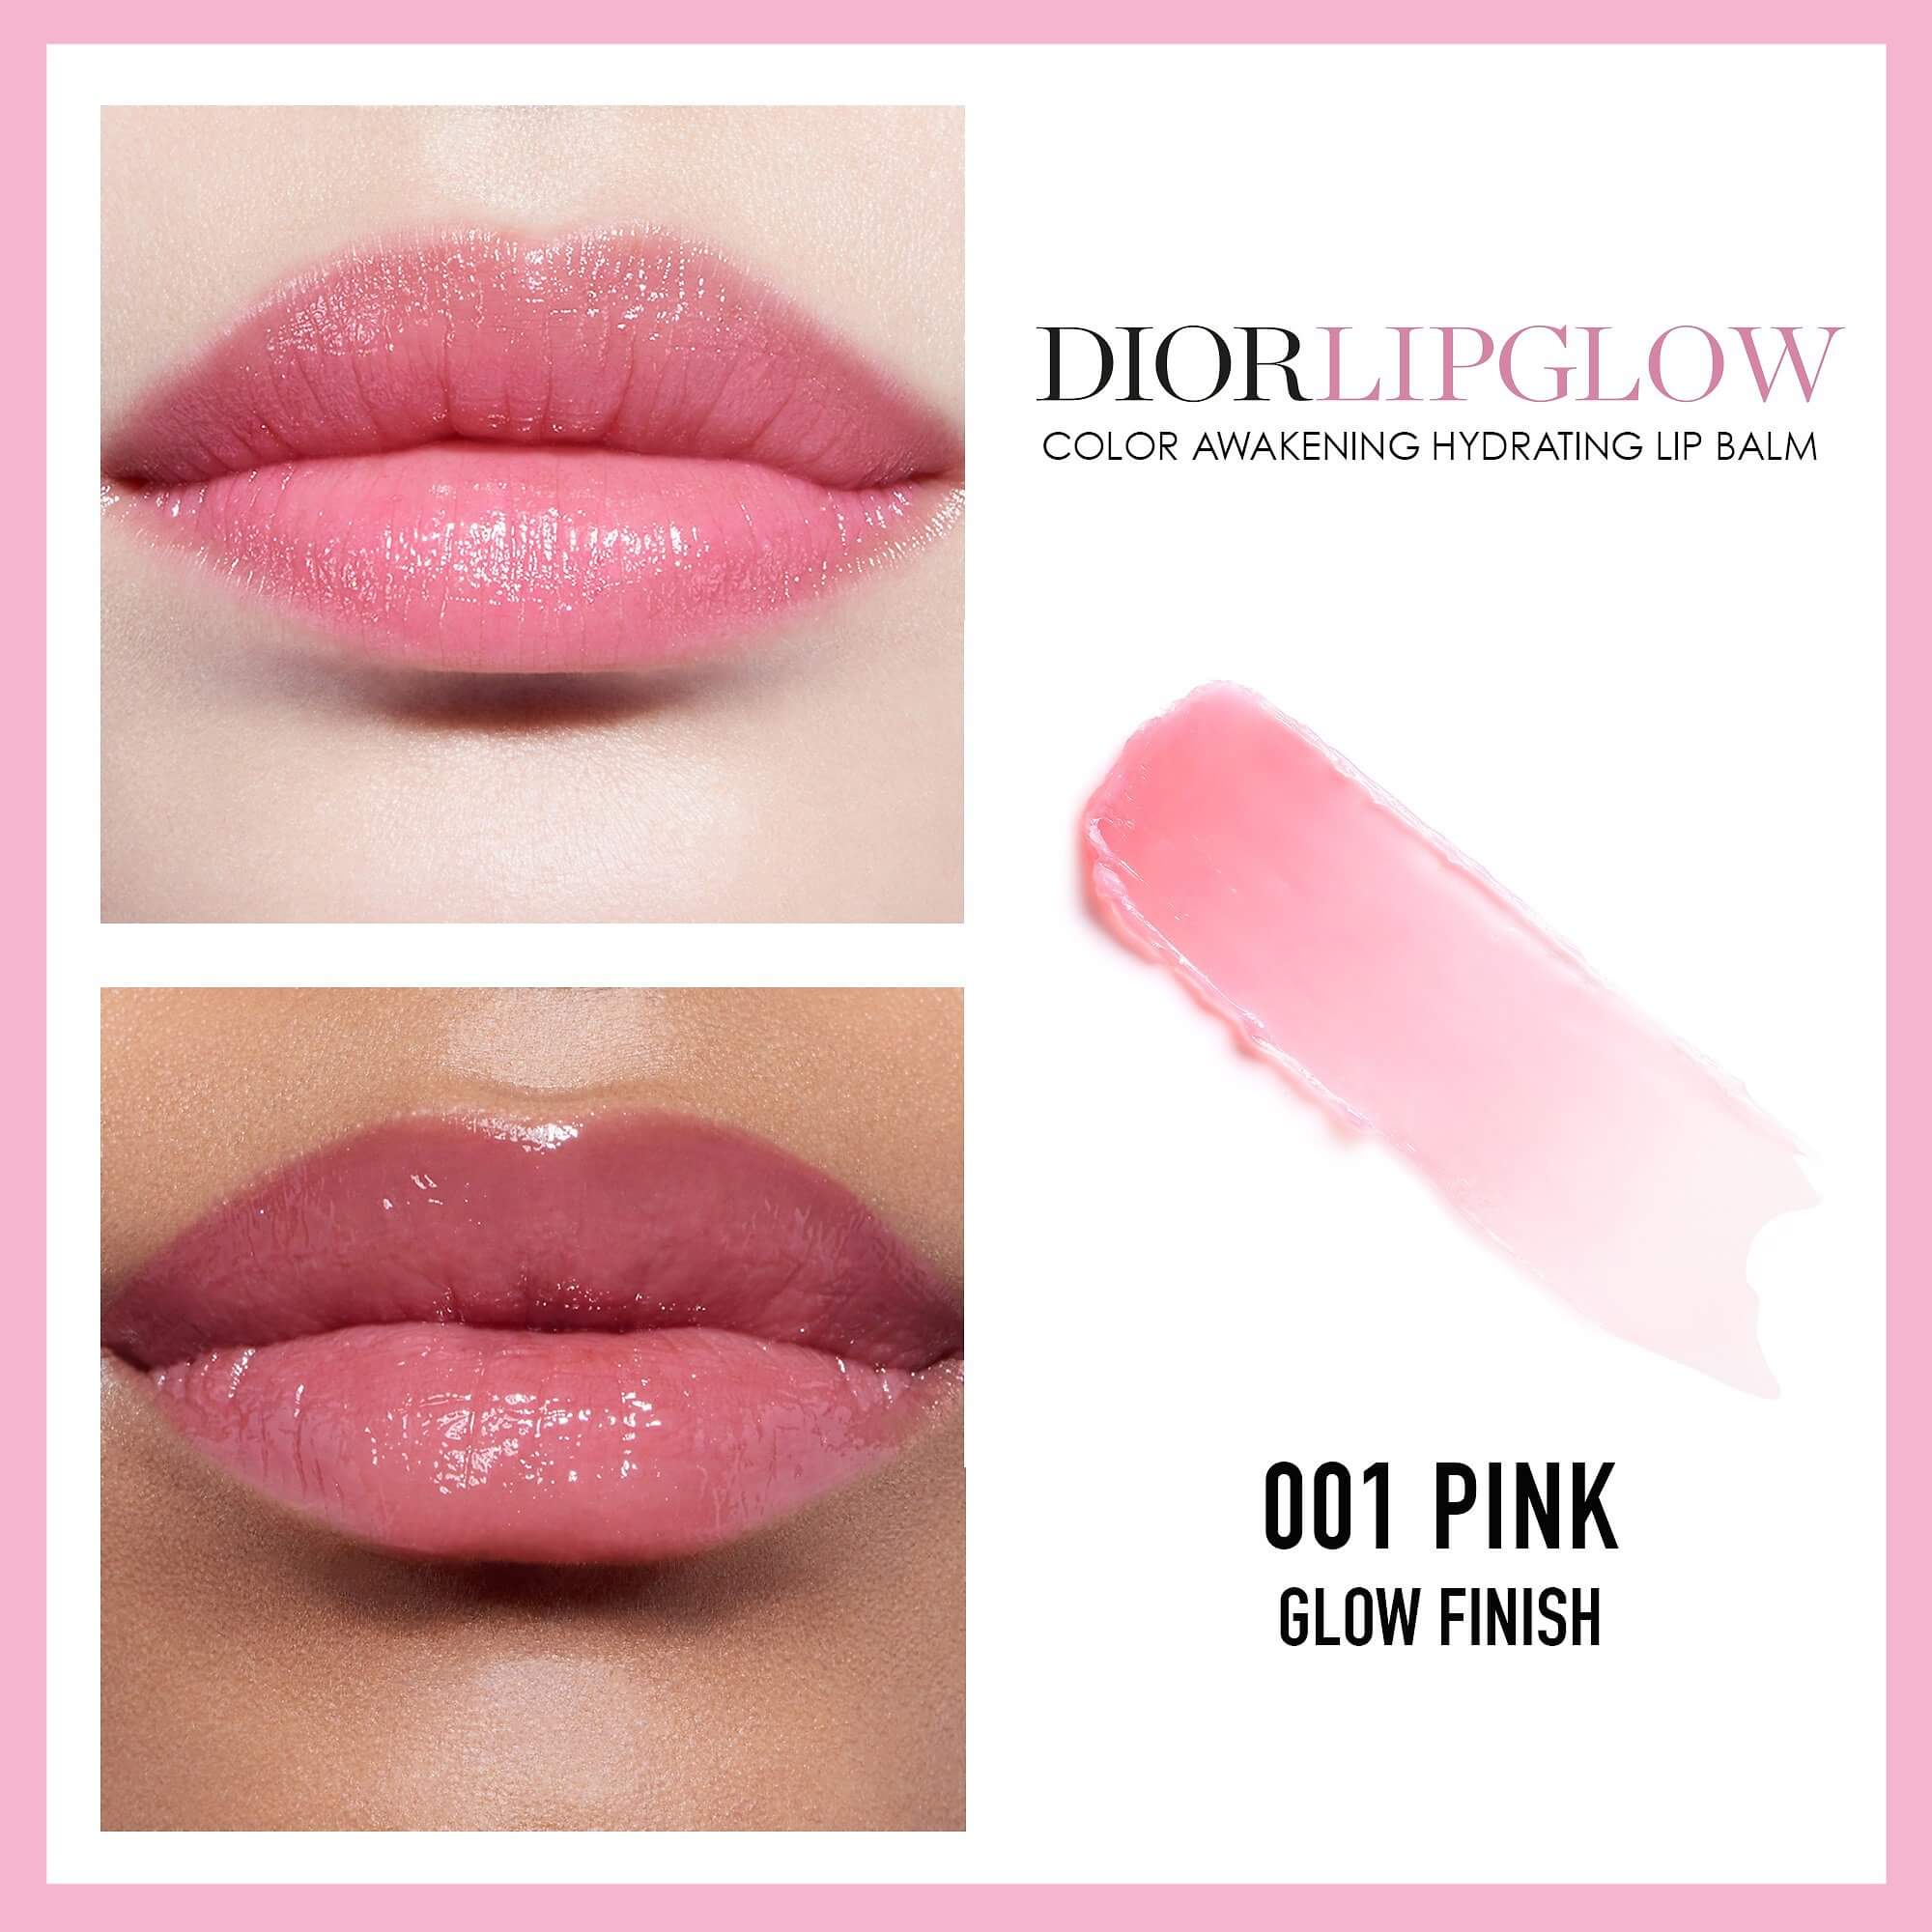 Son Dưỡng Dior Addict Lip Glow Pink 001  Màu Hồng Nhẹ  Vilip Shop  Mỹ  phẩm chính hãng